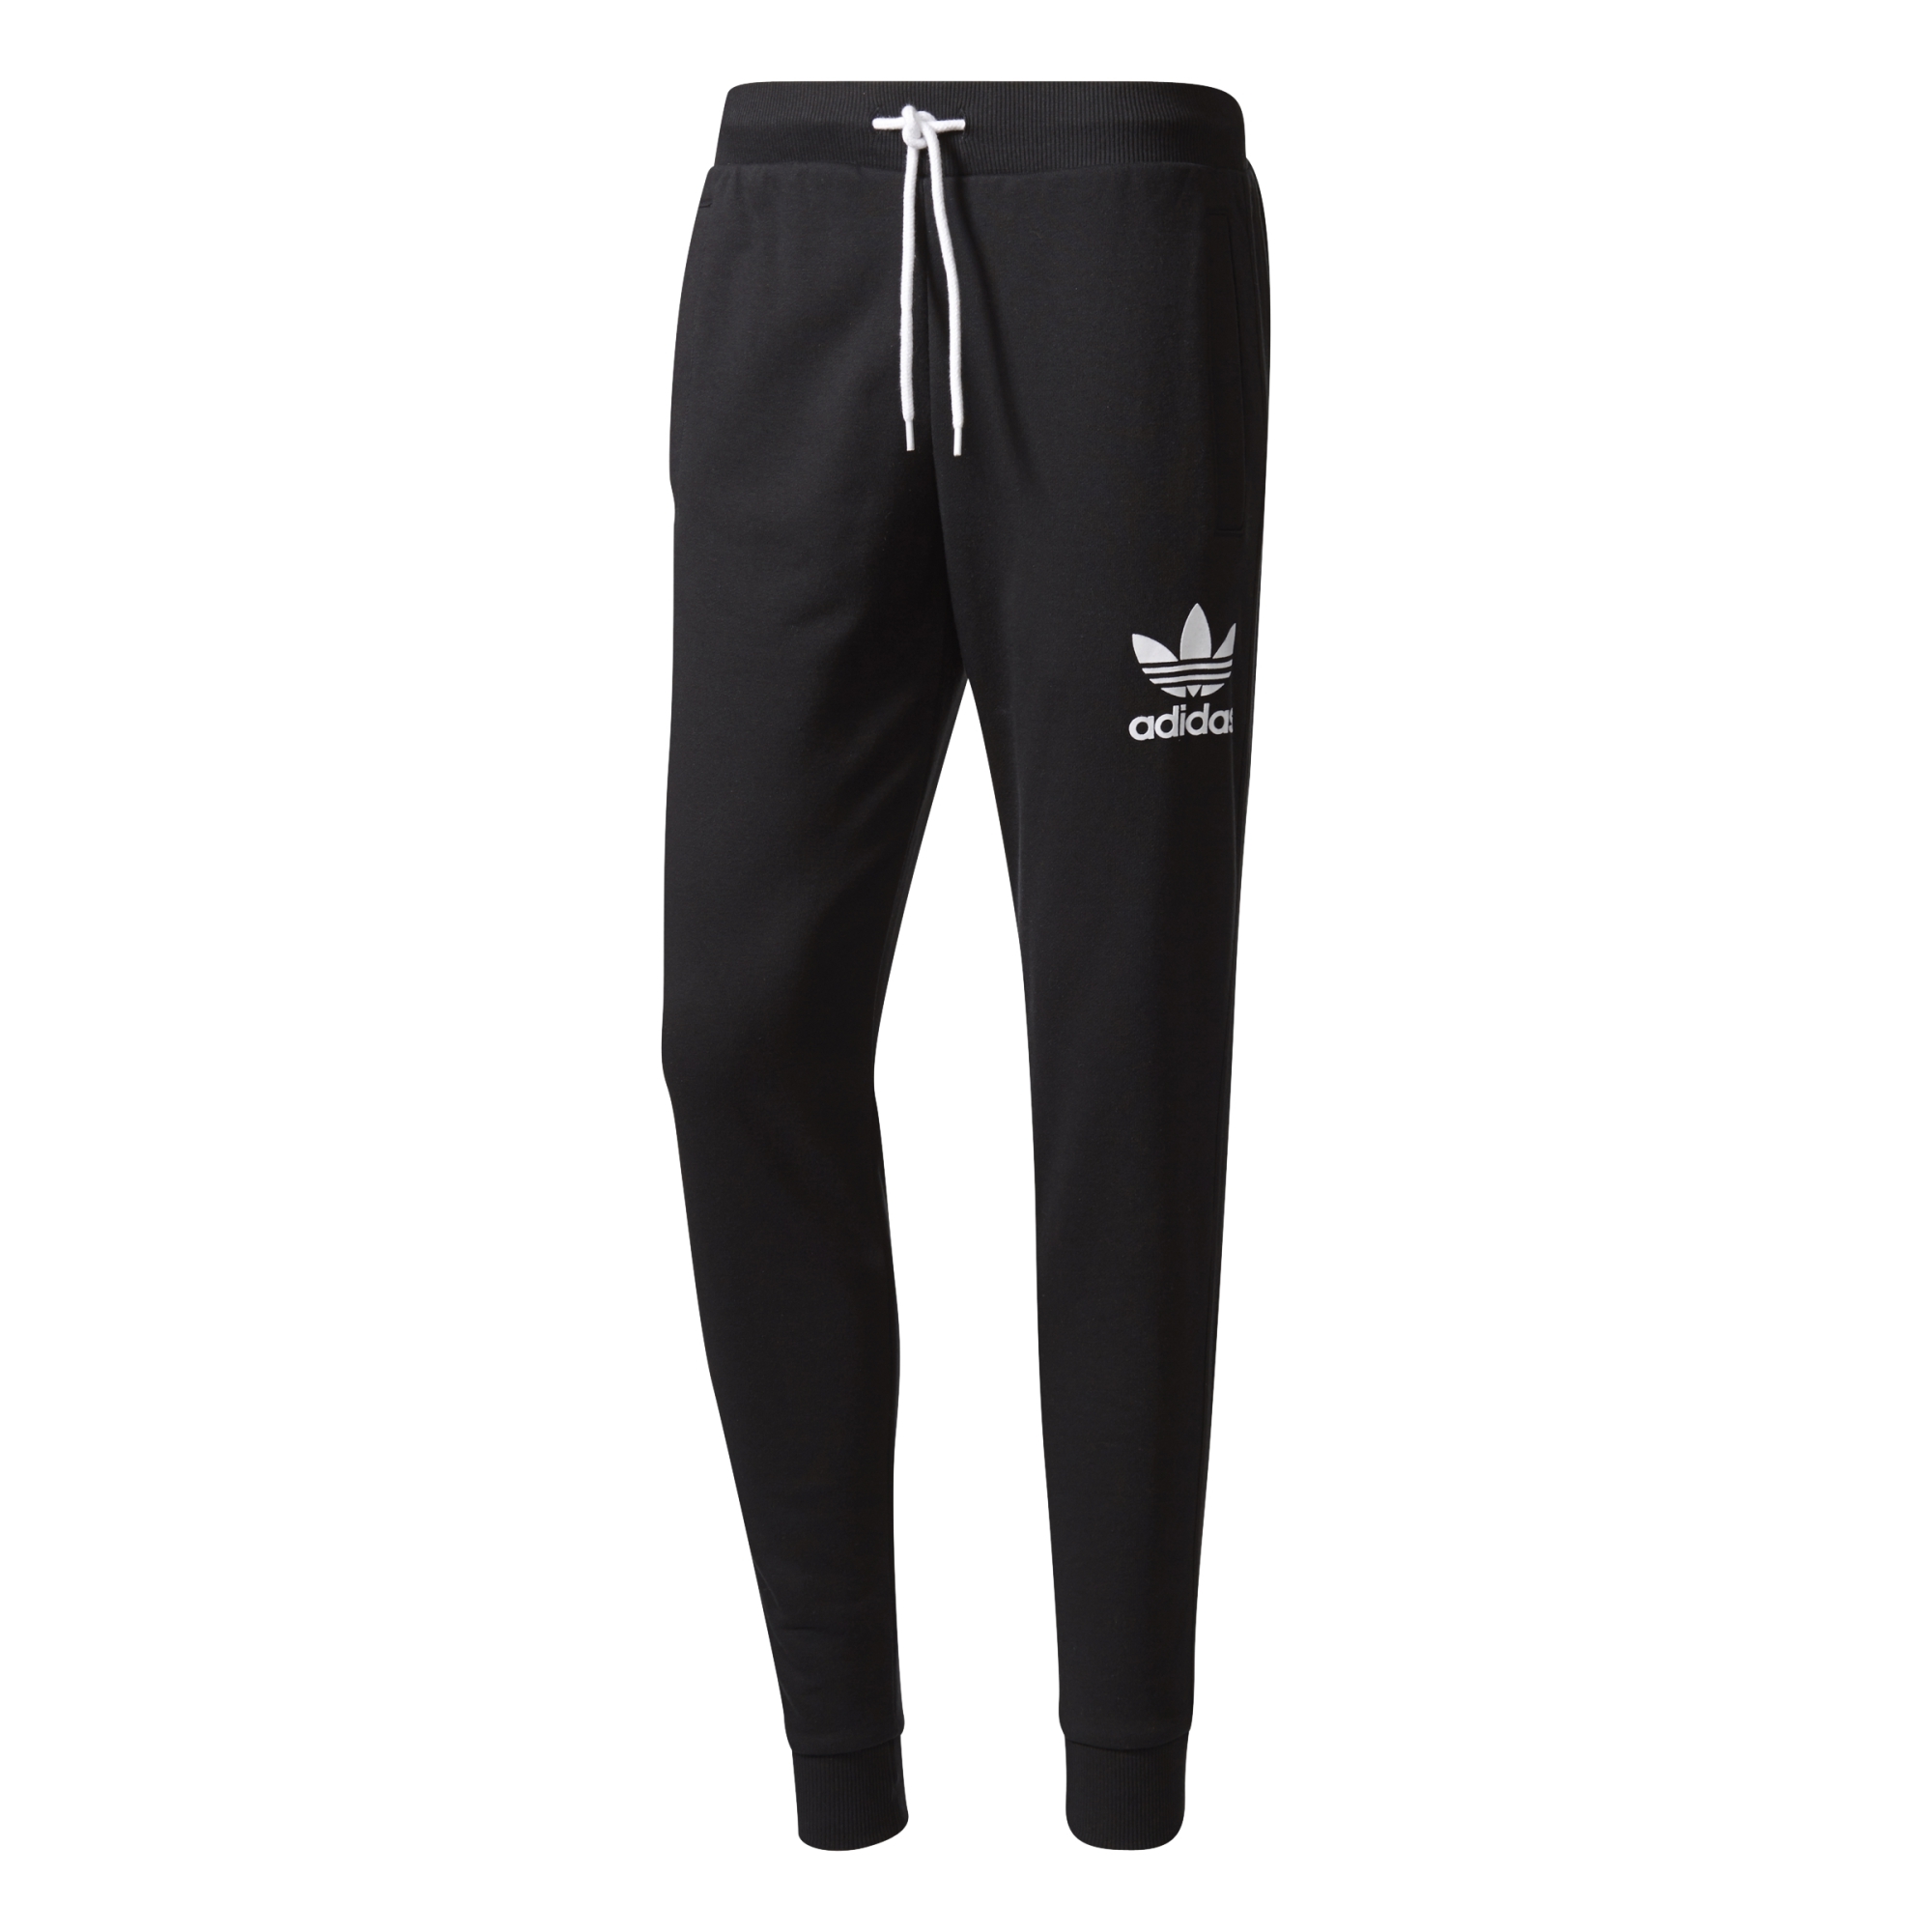 Hablar en voz alta Inocencia Contento Adidas Originals 3 Stripe Cuffed Sweatpants (black)